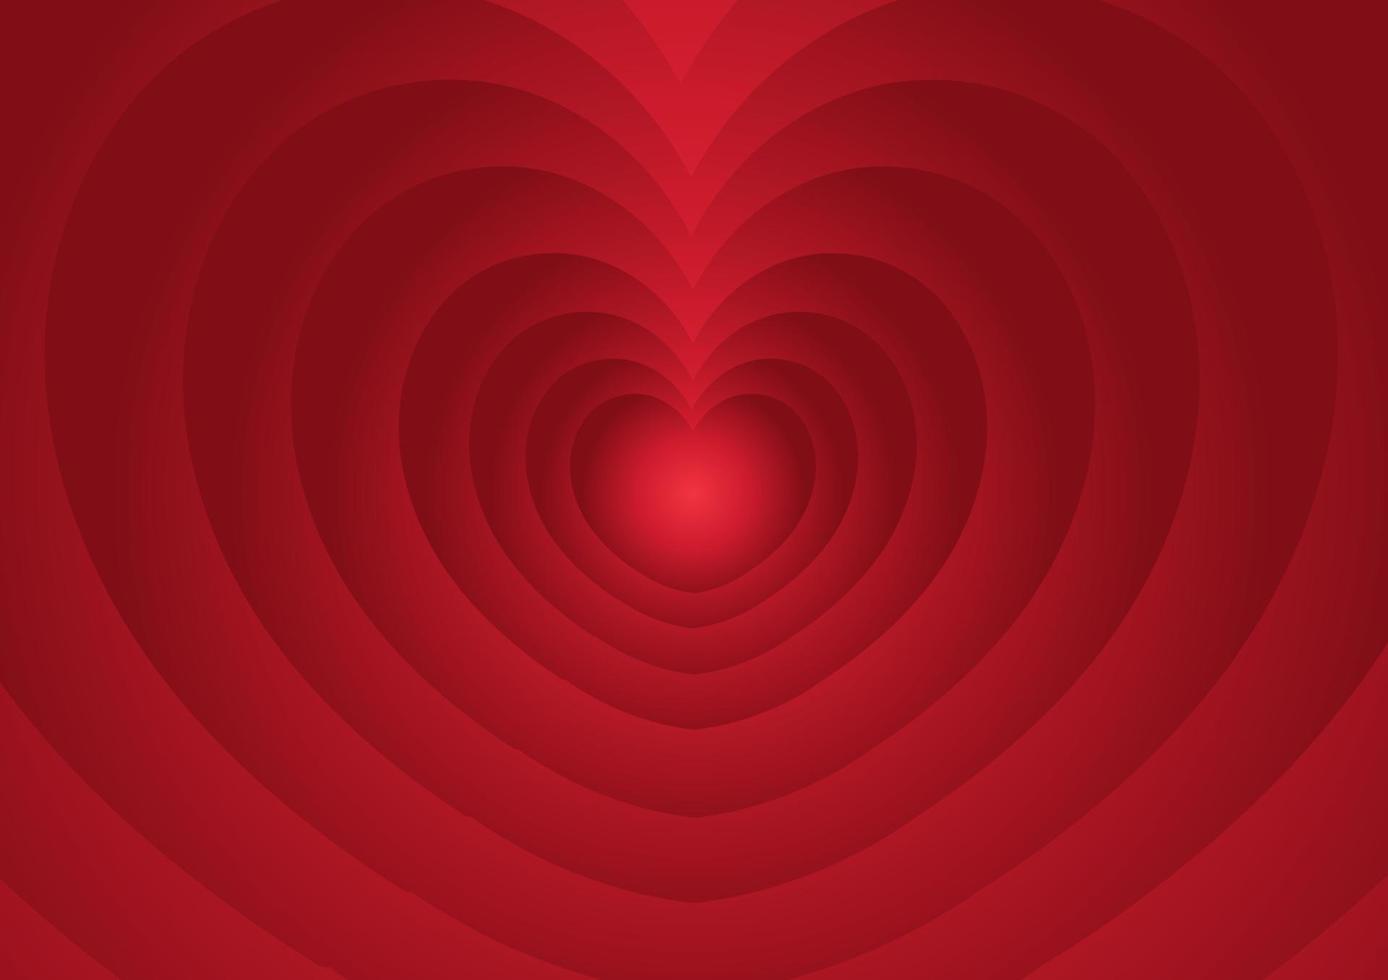 Herzhintergrund mit roter Farbverlaufsfarbe vektor